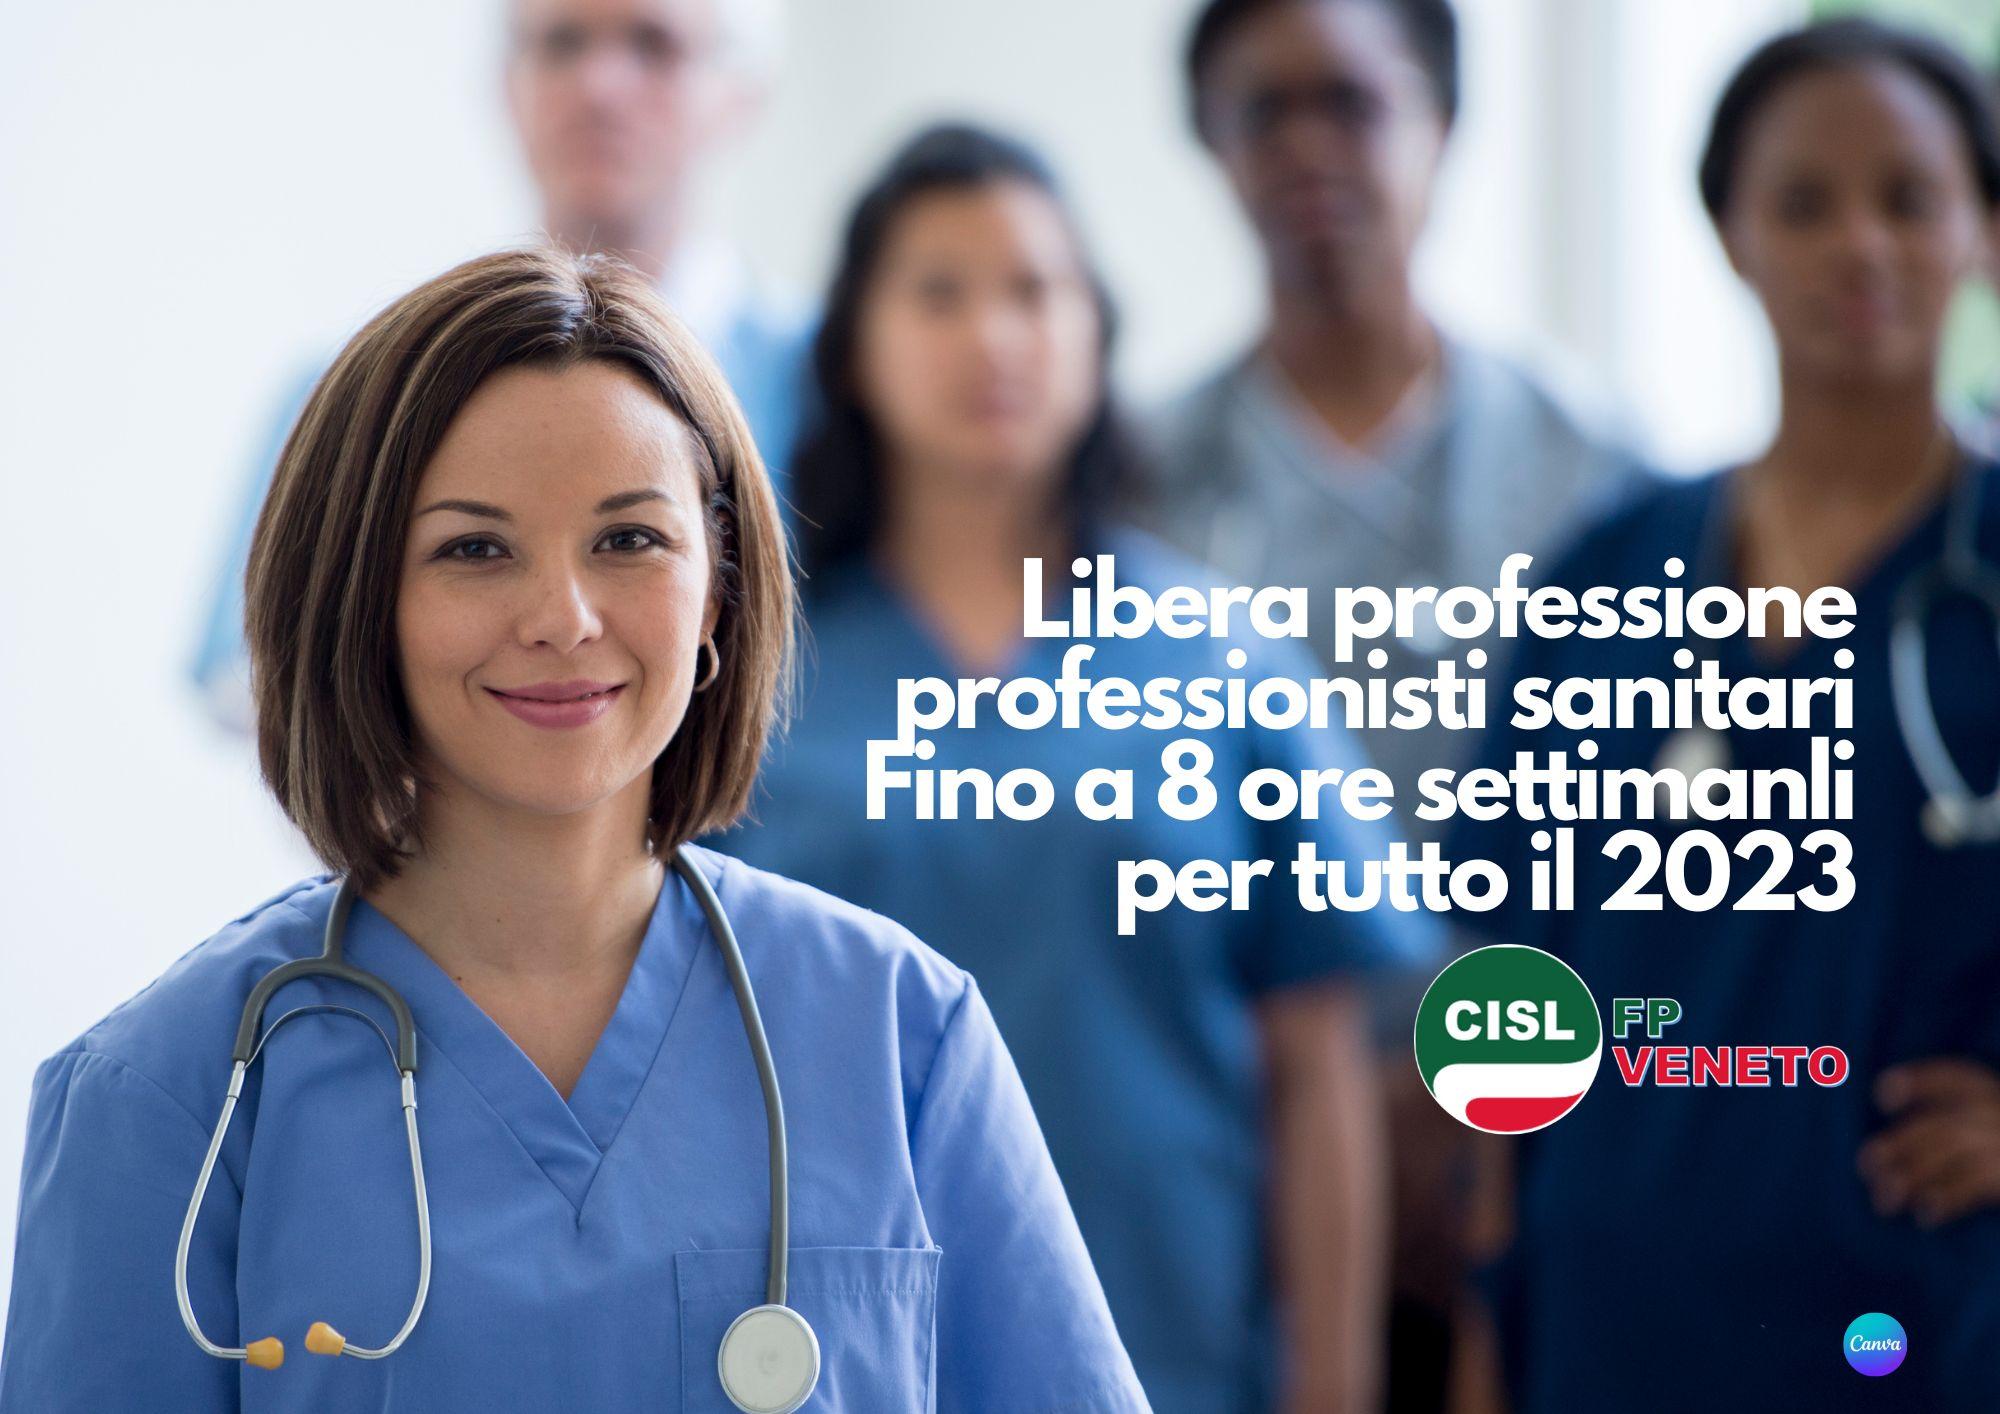 CISL FP Veneto. Libera professione professionisti sanitari confermata nel 2023 sino a 8 ore settimanali